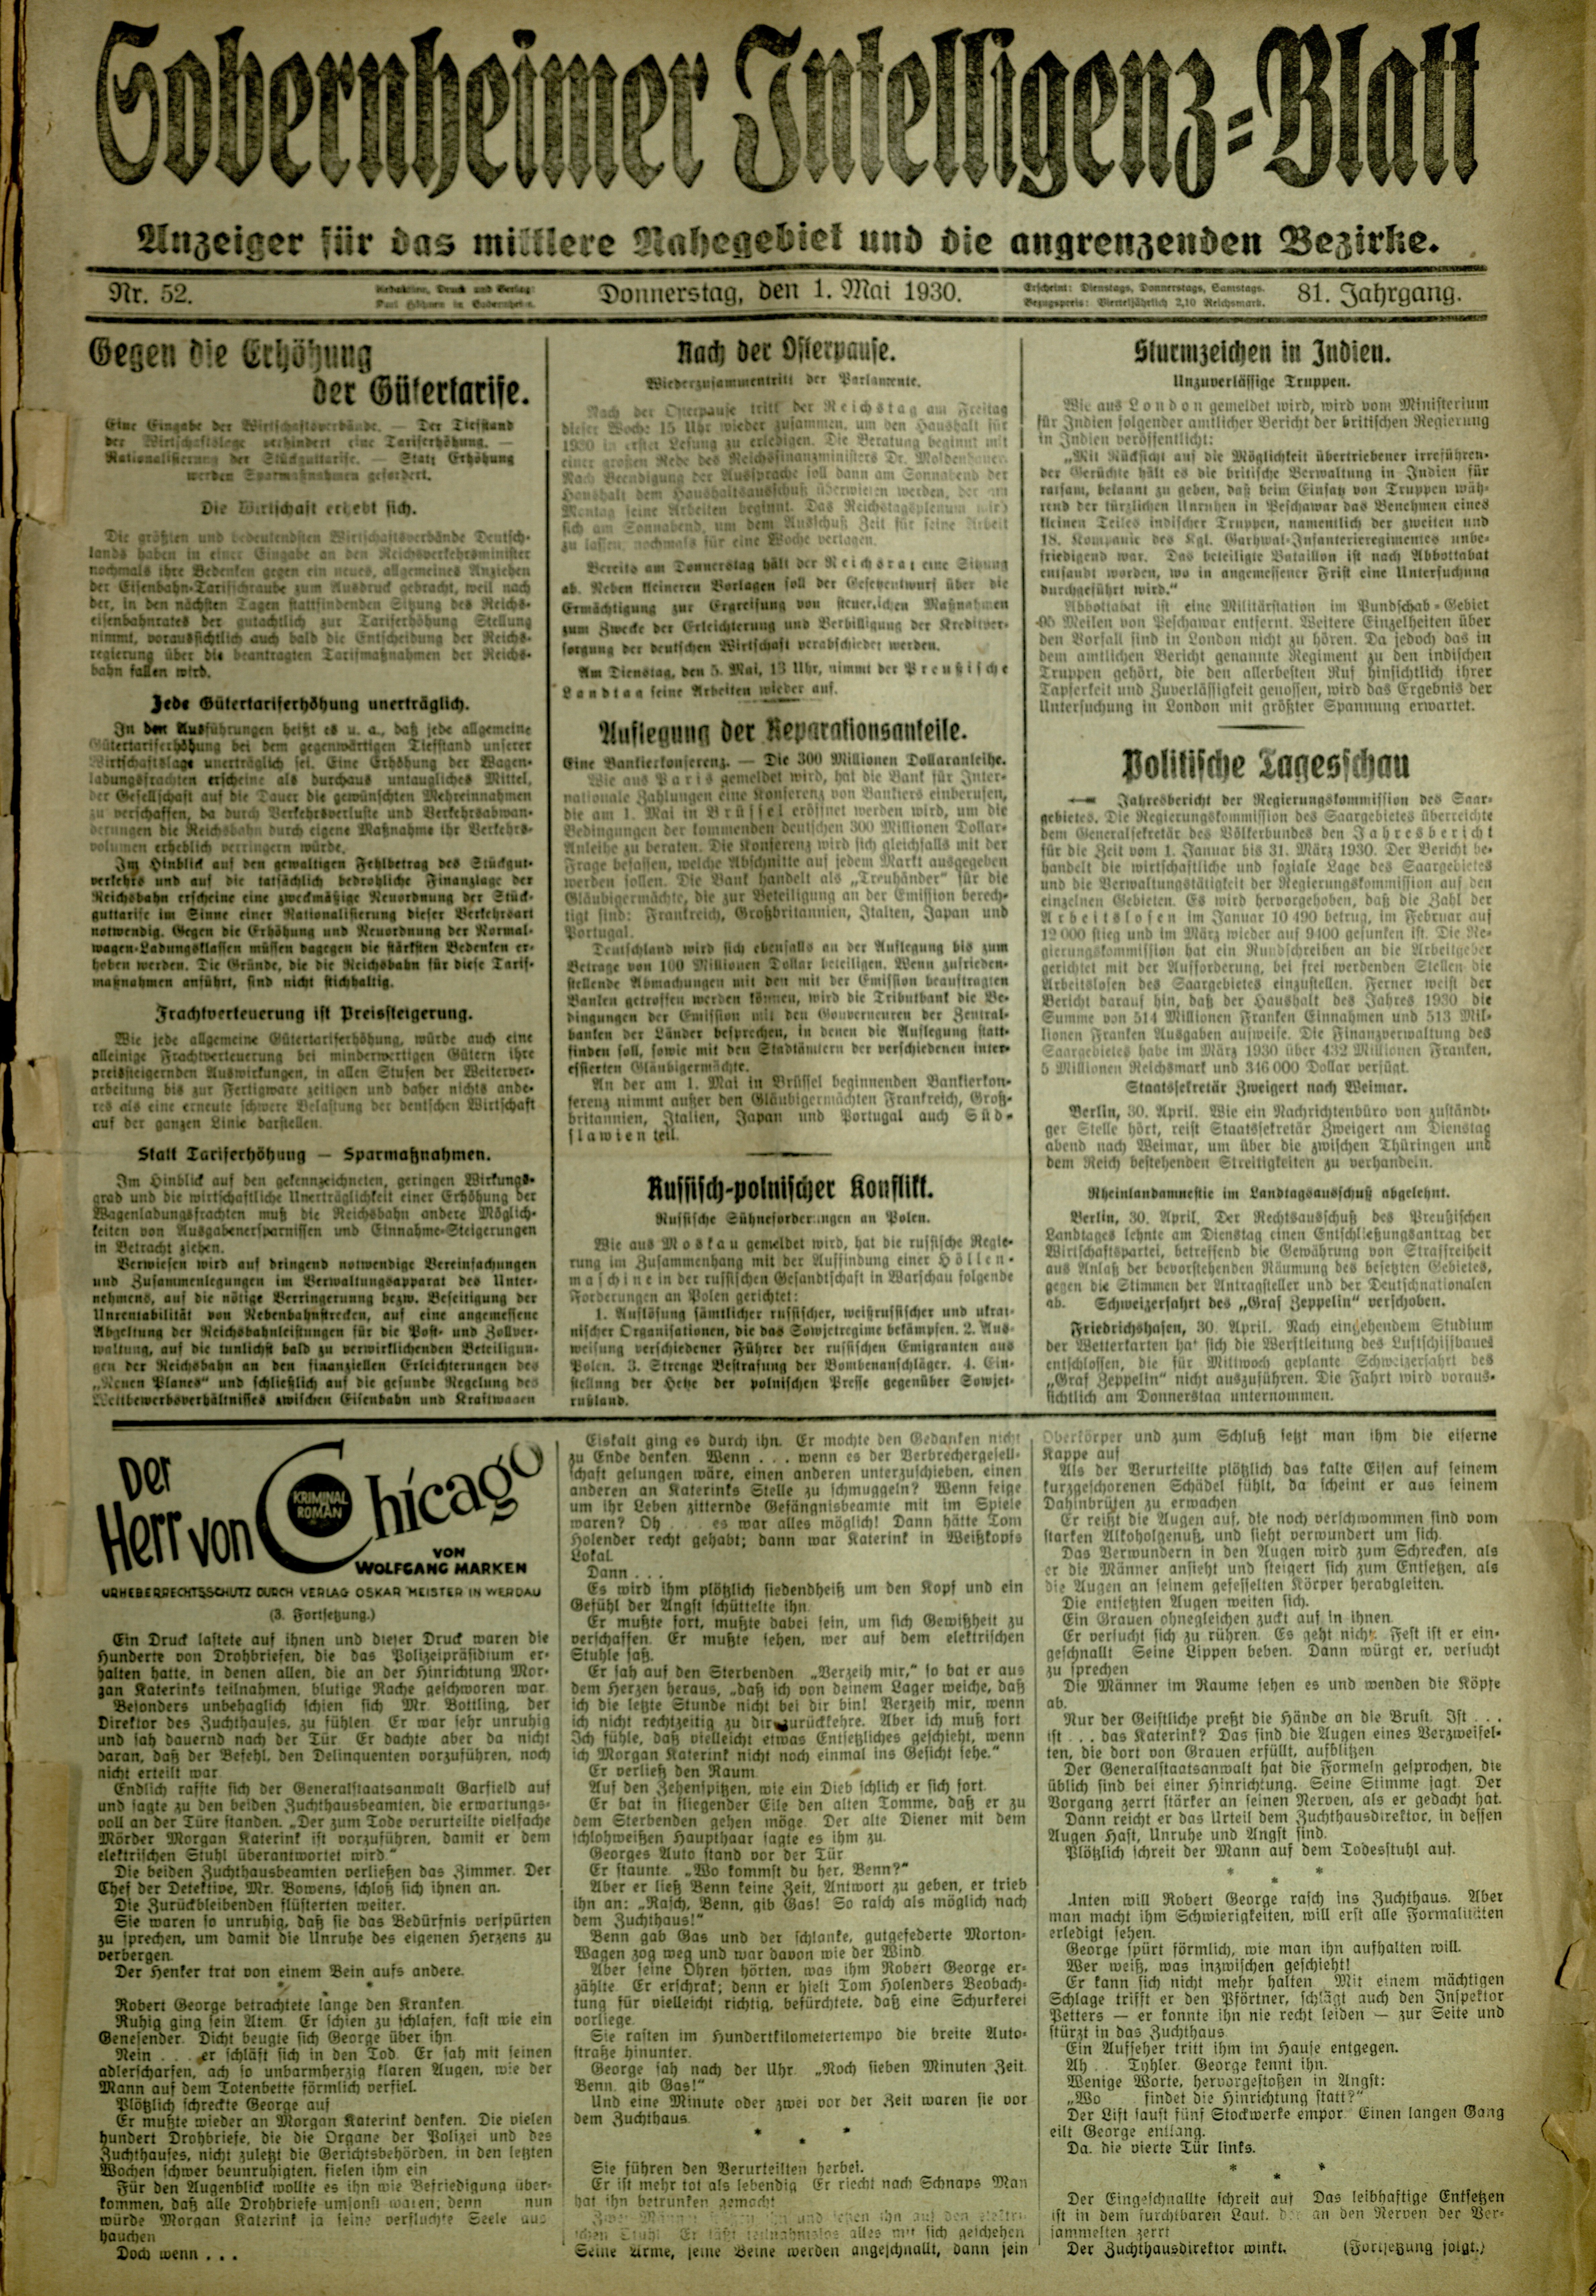 Zeitung: Sobernheimer Intelligenzblatt; Mai 1930, Jg. 81 Nr. 52 (Heimatmuseum Bad Sobernheim CC BY-NC-SA)